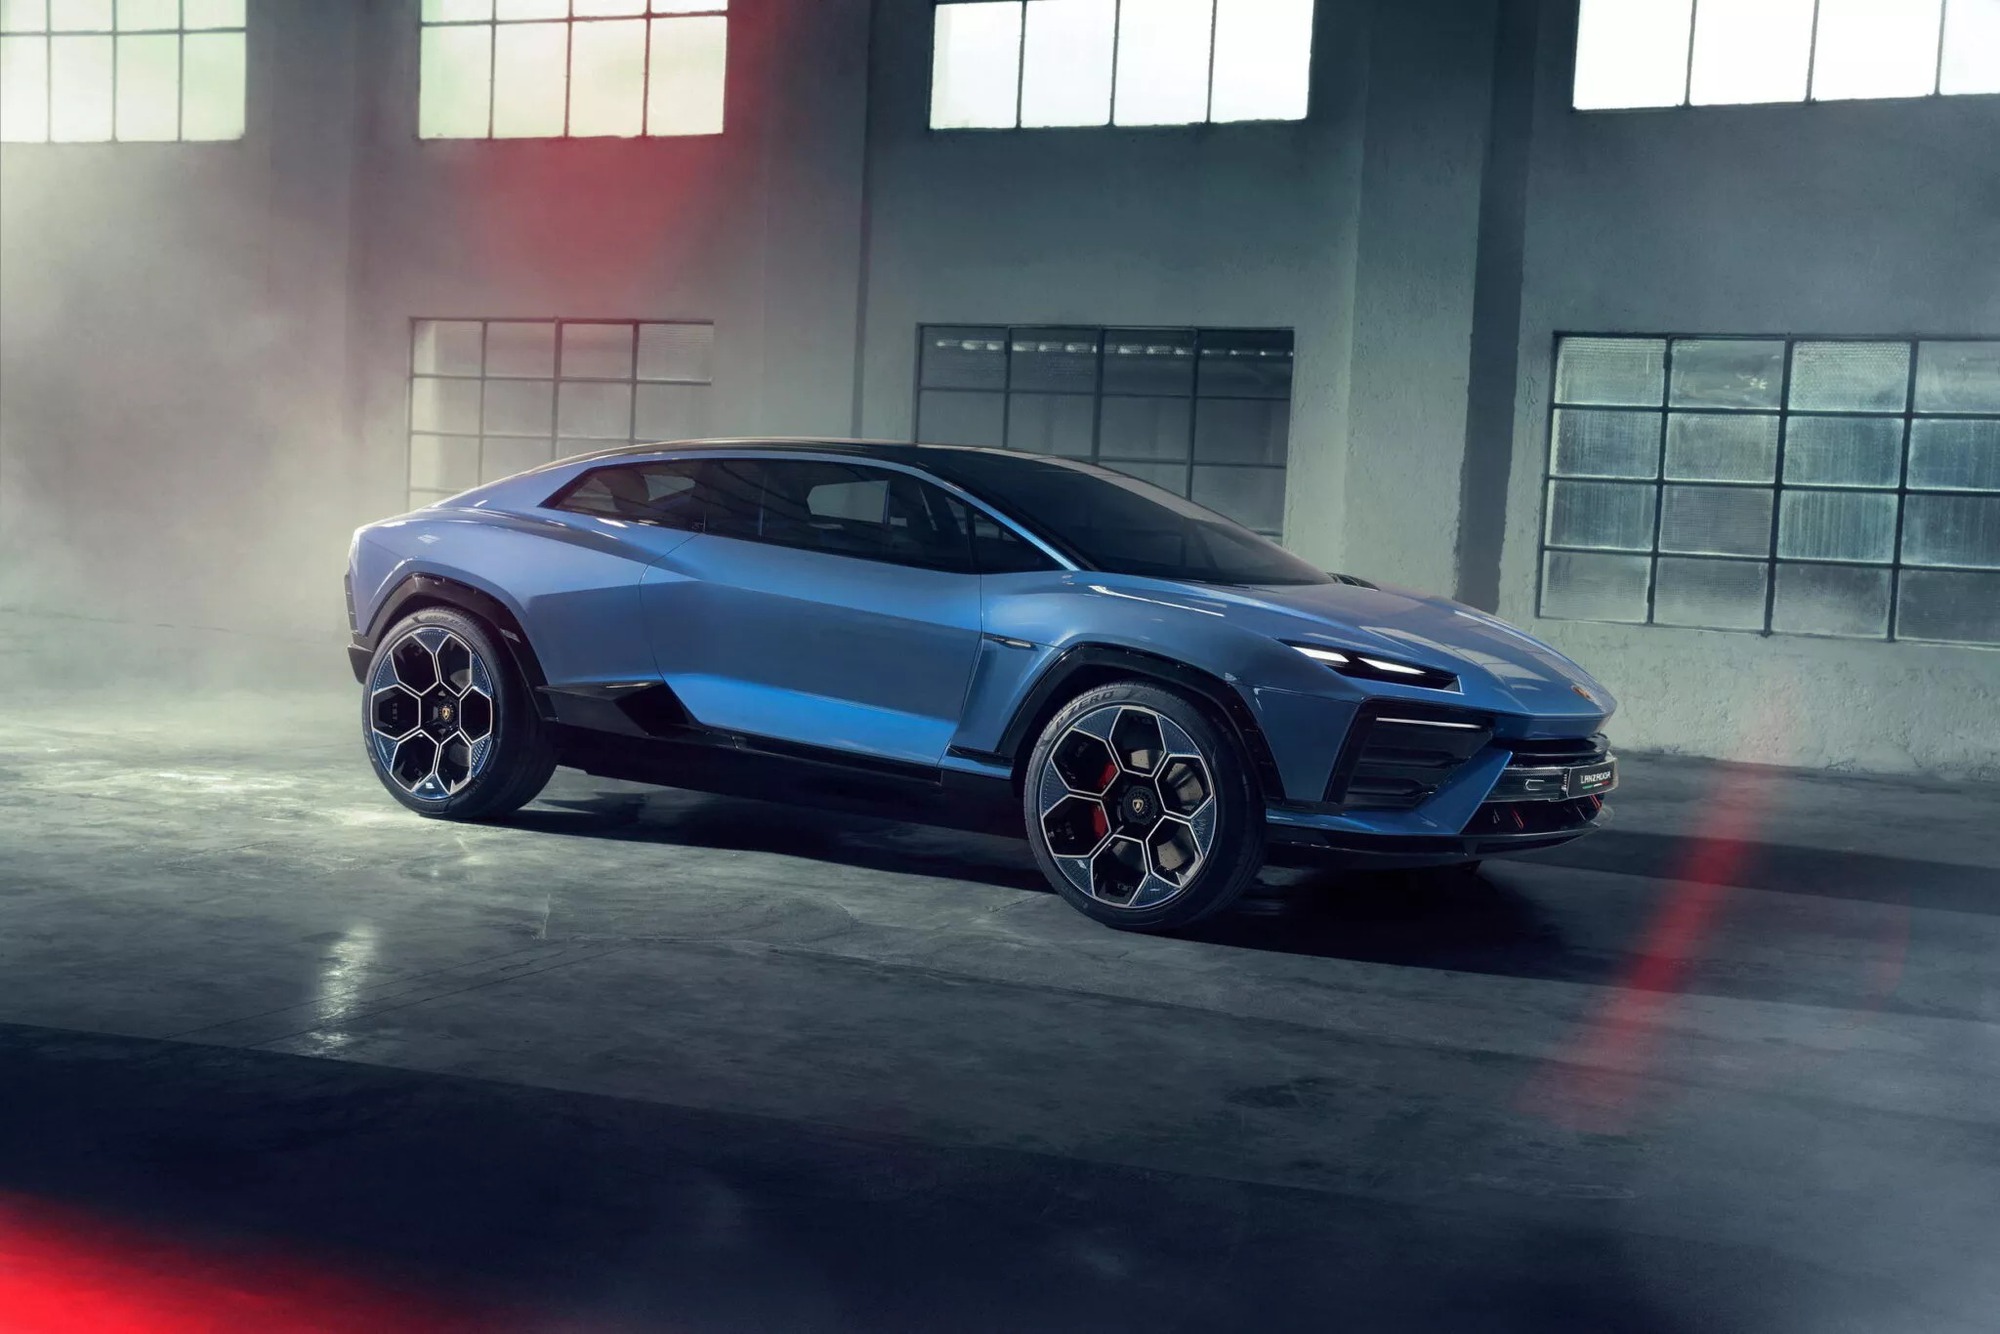 SUV thứ 2 của Lamborghini sau Urus chính thức chào sân, sẽ là xe điện đầu tiên của hãng - Ảnh 1.